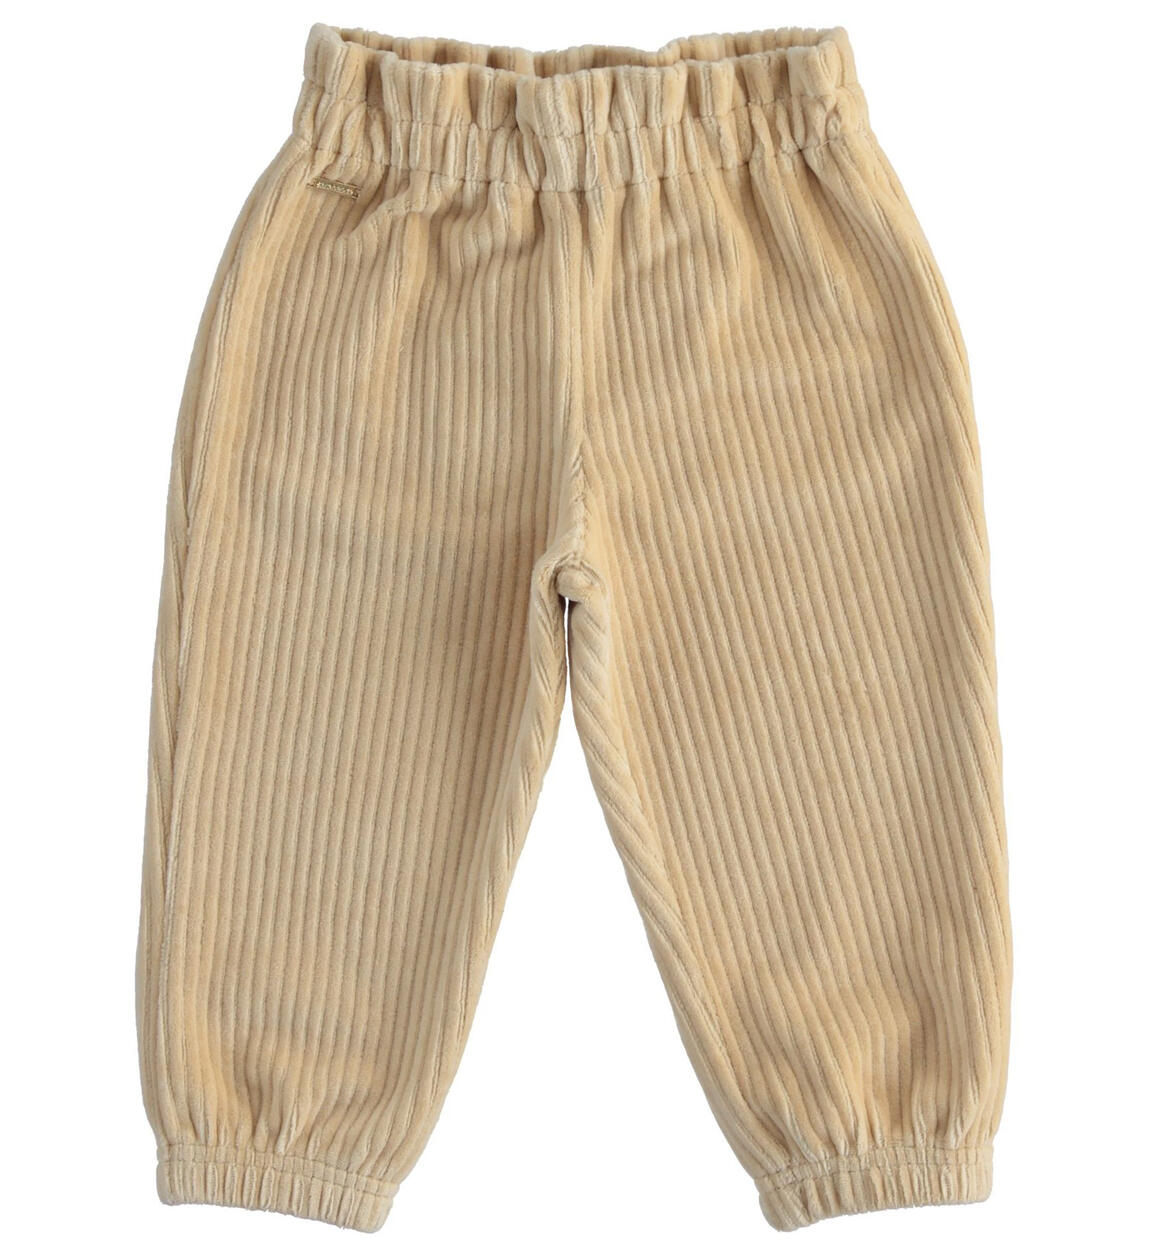 Pantalone bambina con vita arricciata BEIGE Sarabanda